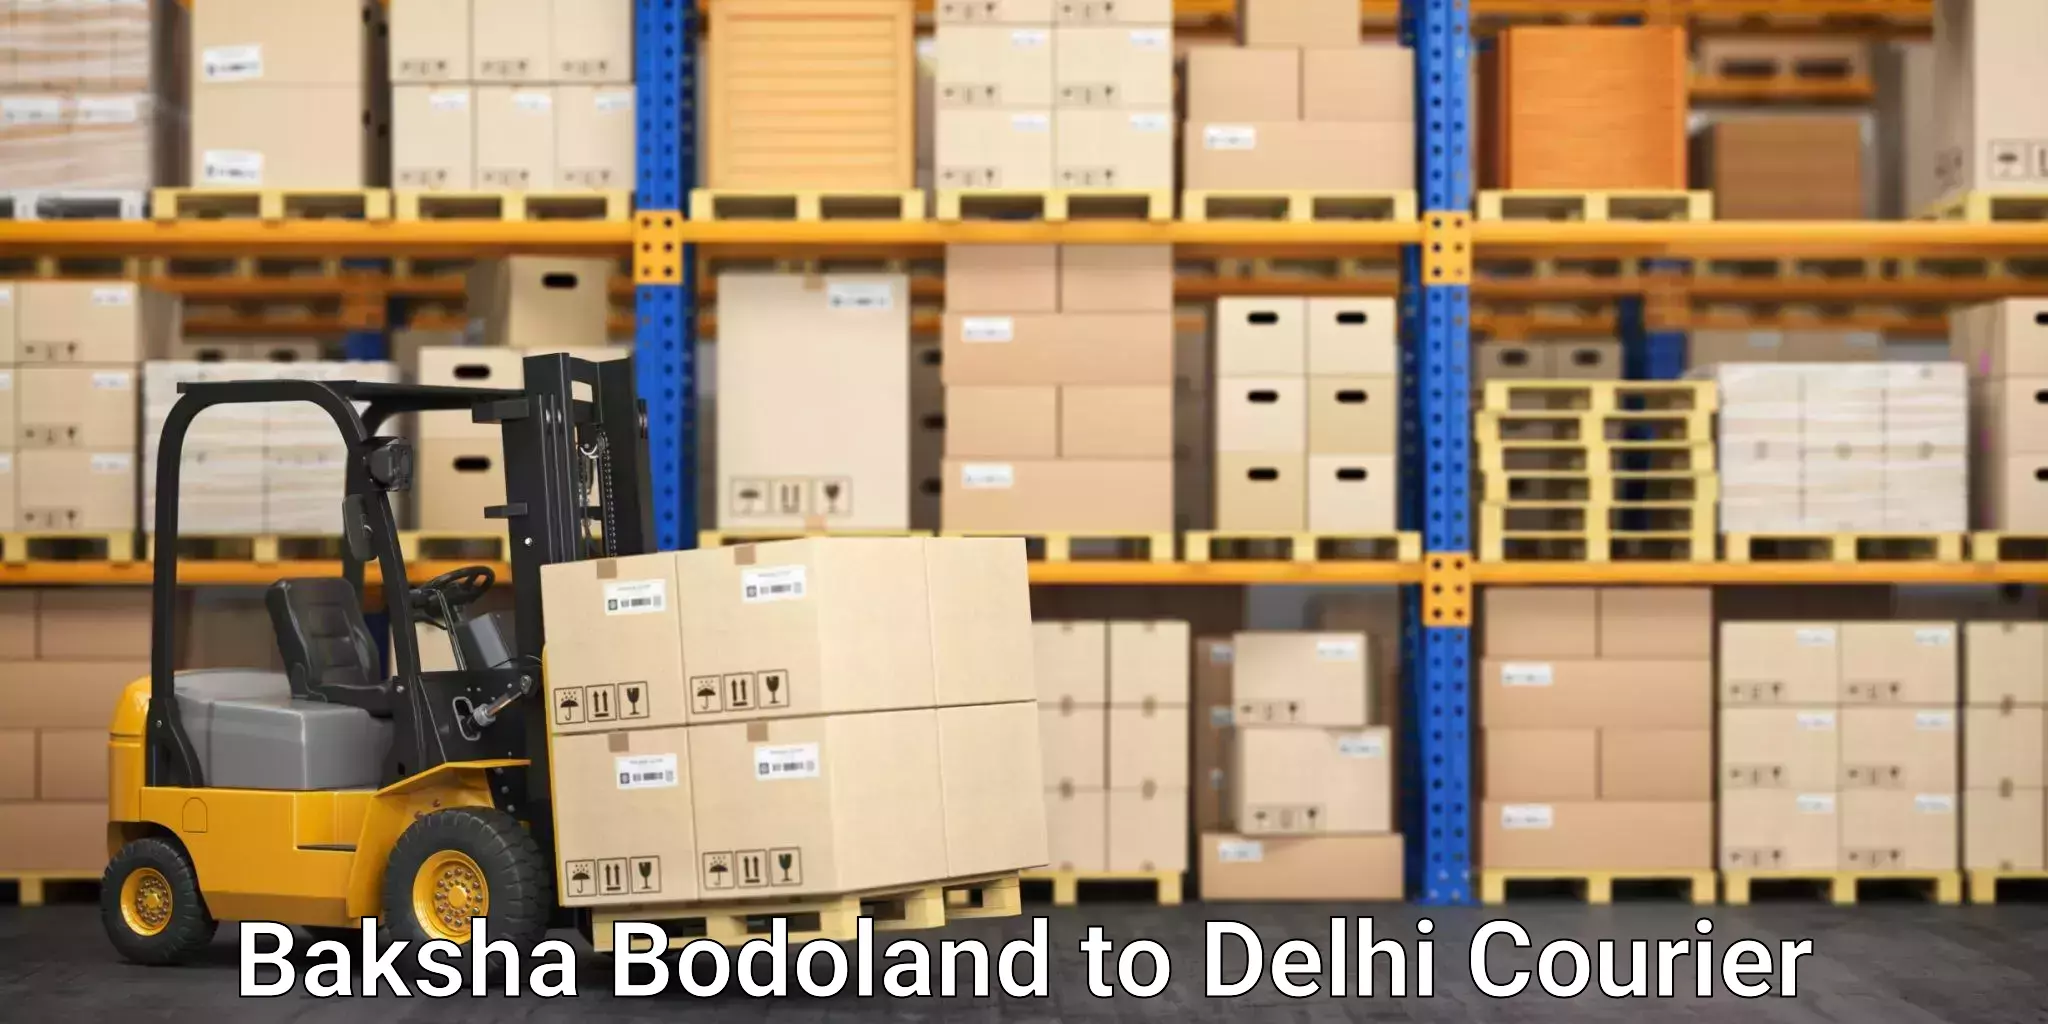 Cash on delivery service Baksha Bodoland to NCR